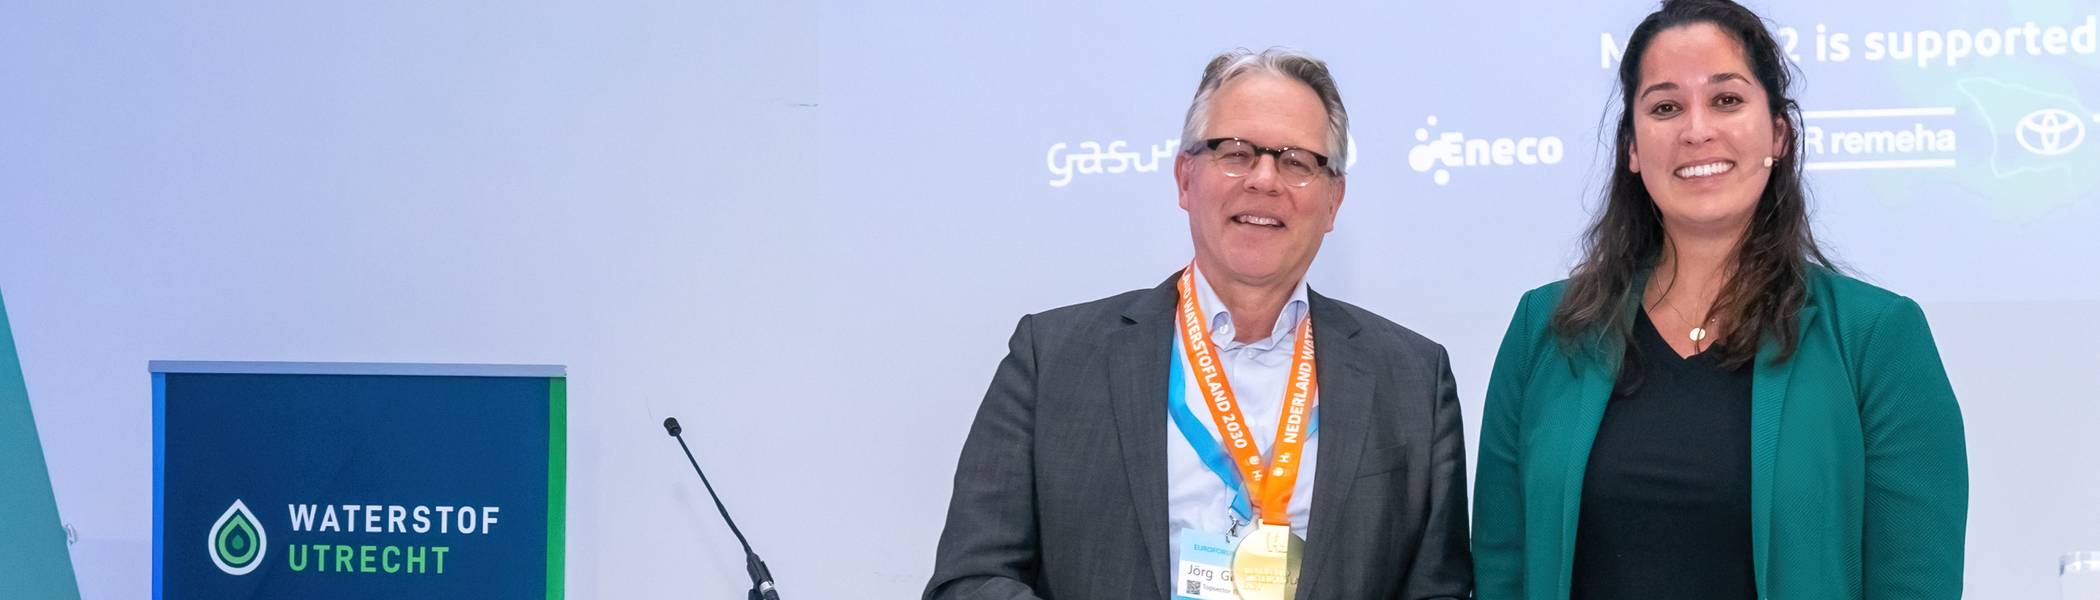 Waterstofmedaille uitgereikt aan directeur TKI Nieuw Gas van de Topsector Energie, Jörg Gigler